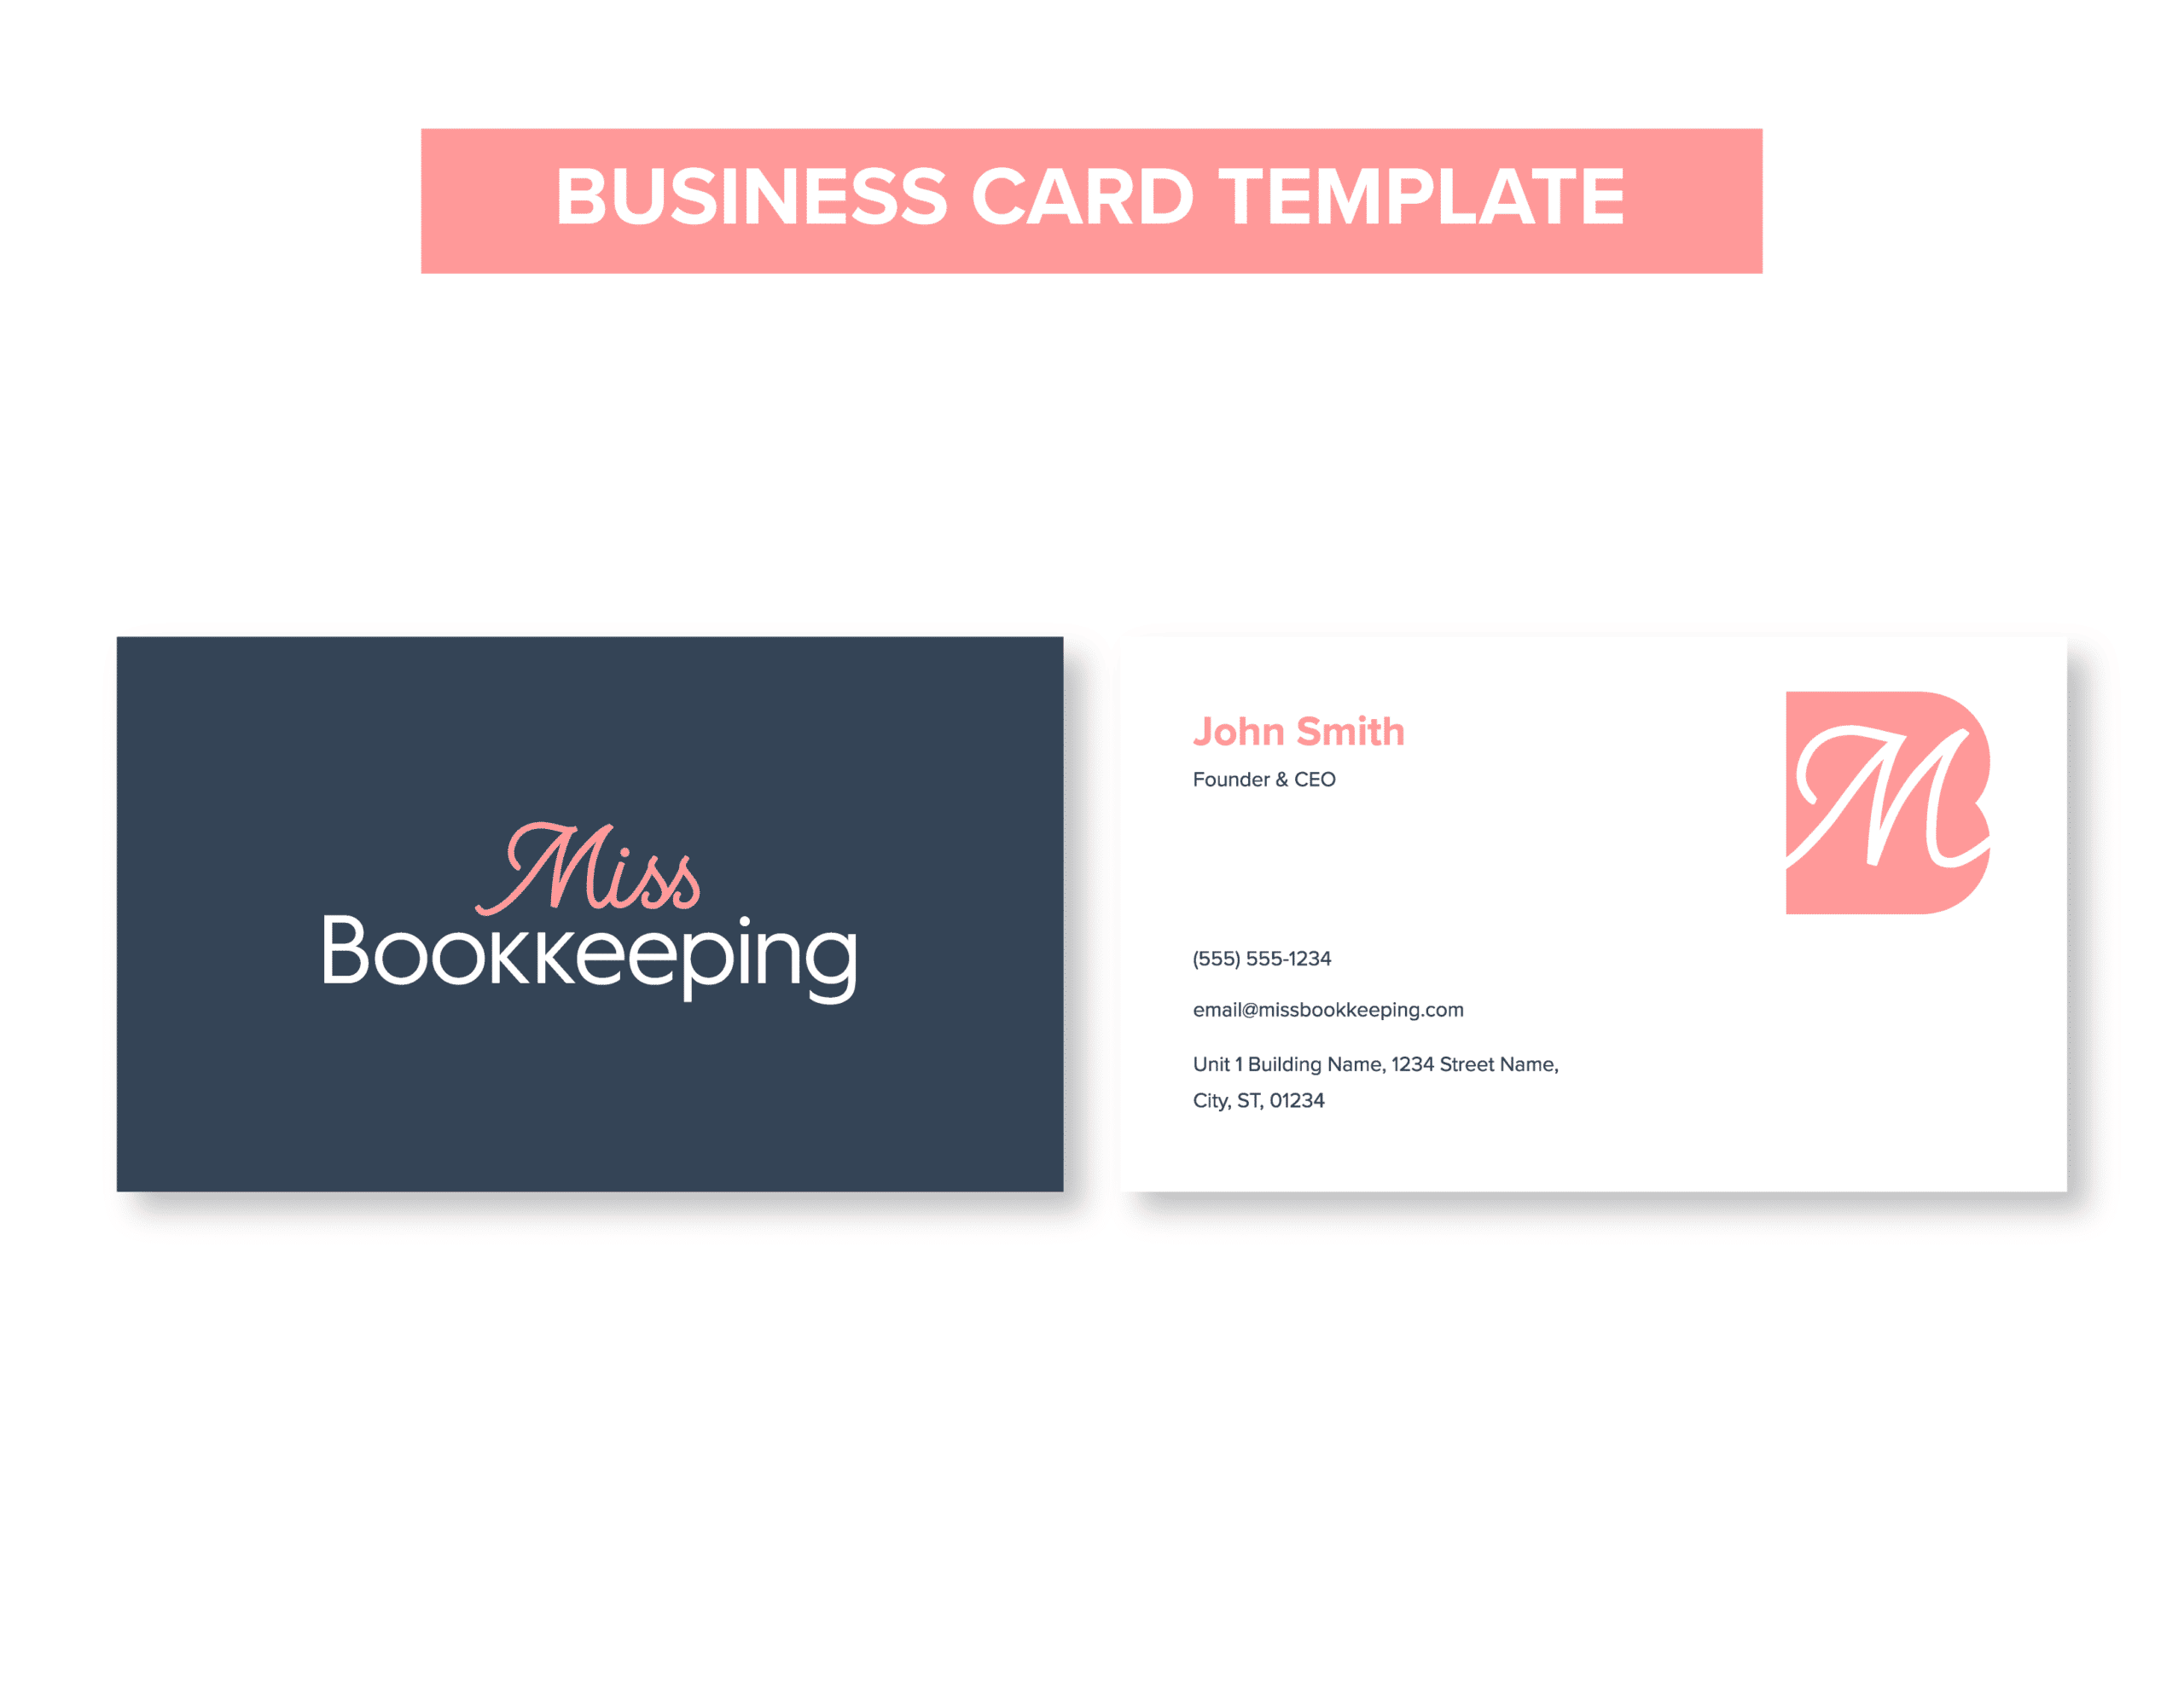 04MissBK__Business Card Template